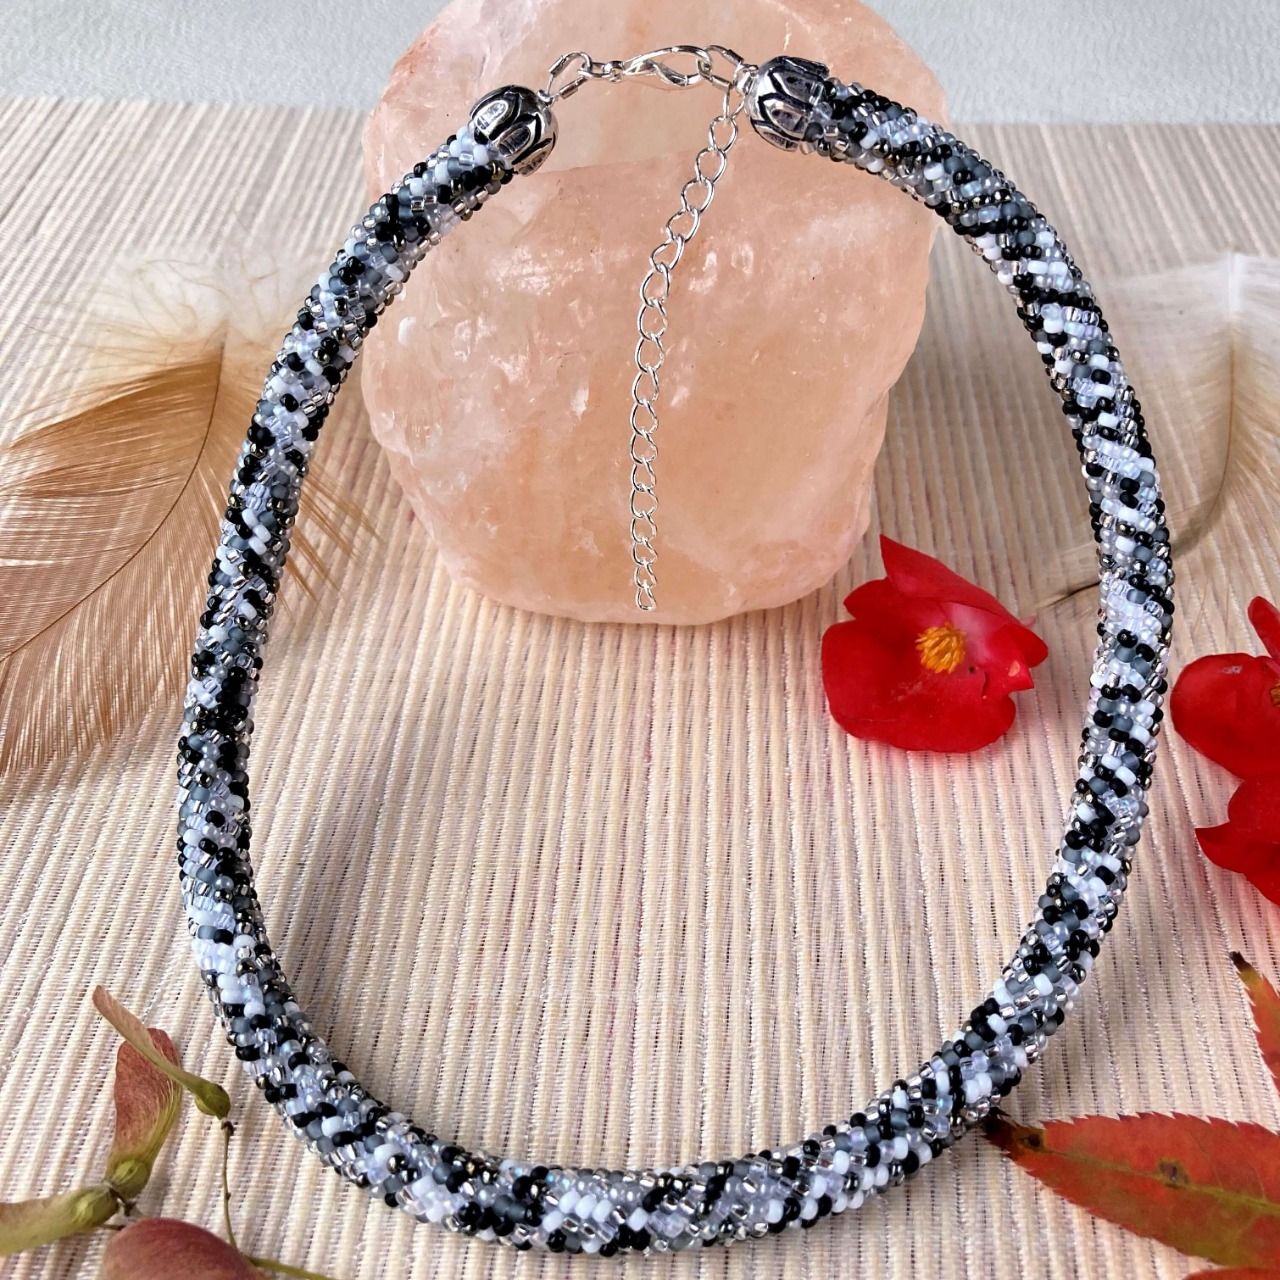 Collier Bracelet en perles de rocailles camaïeu de noirs, blancs et argentés 